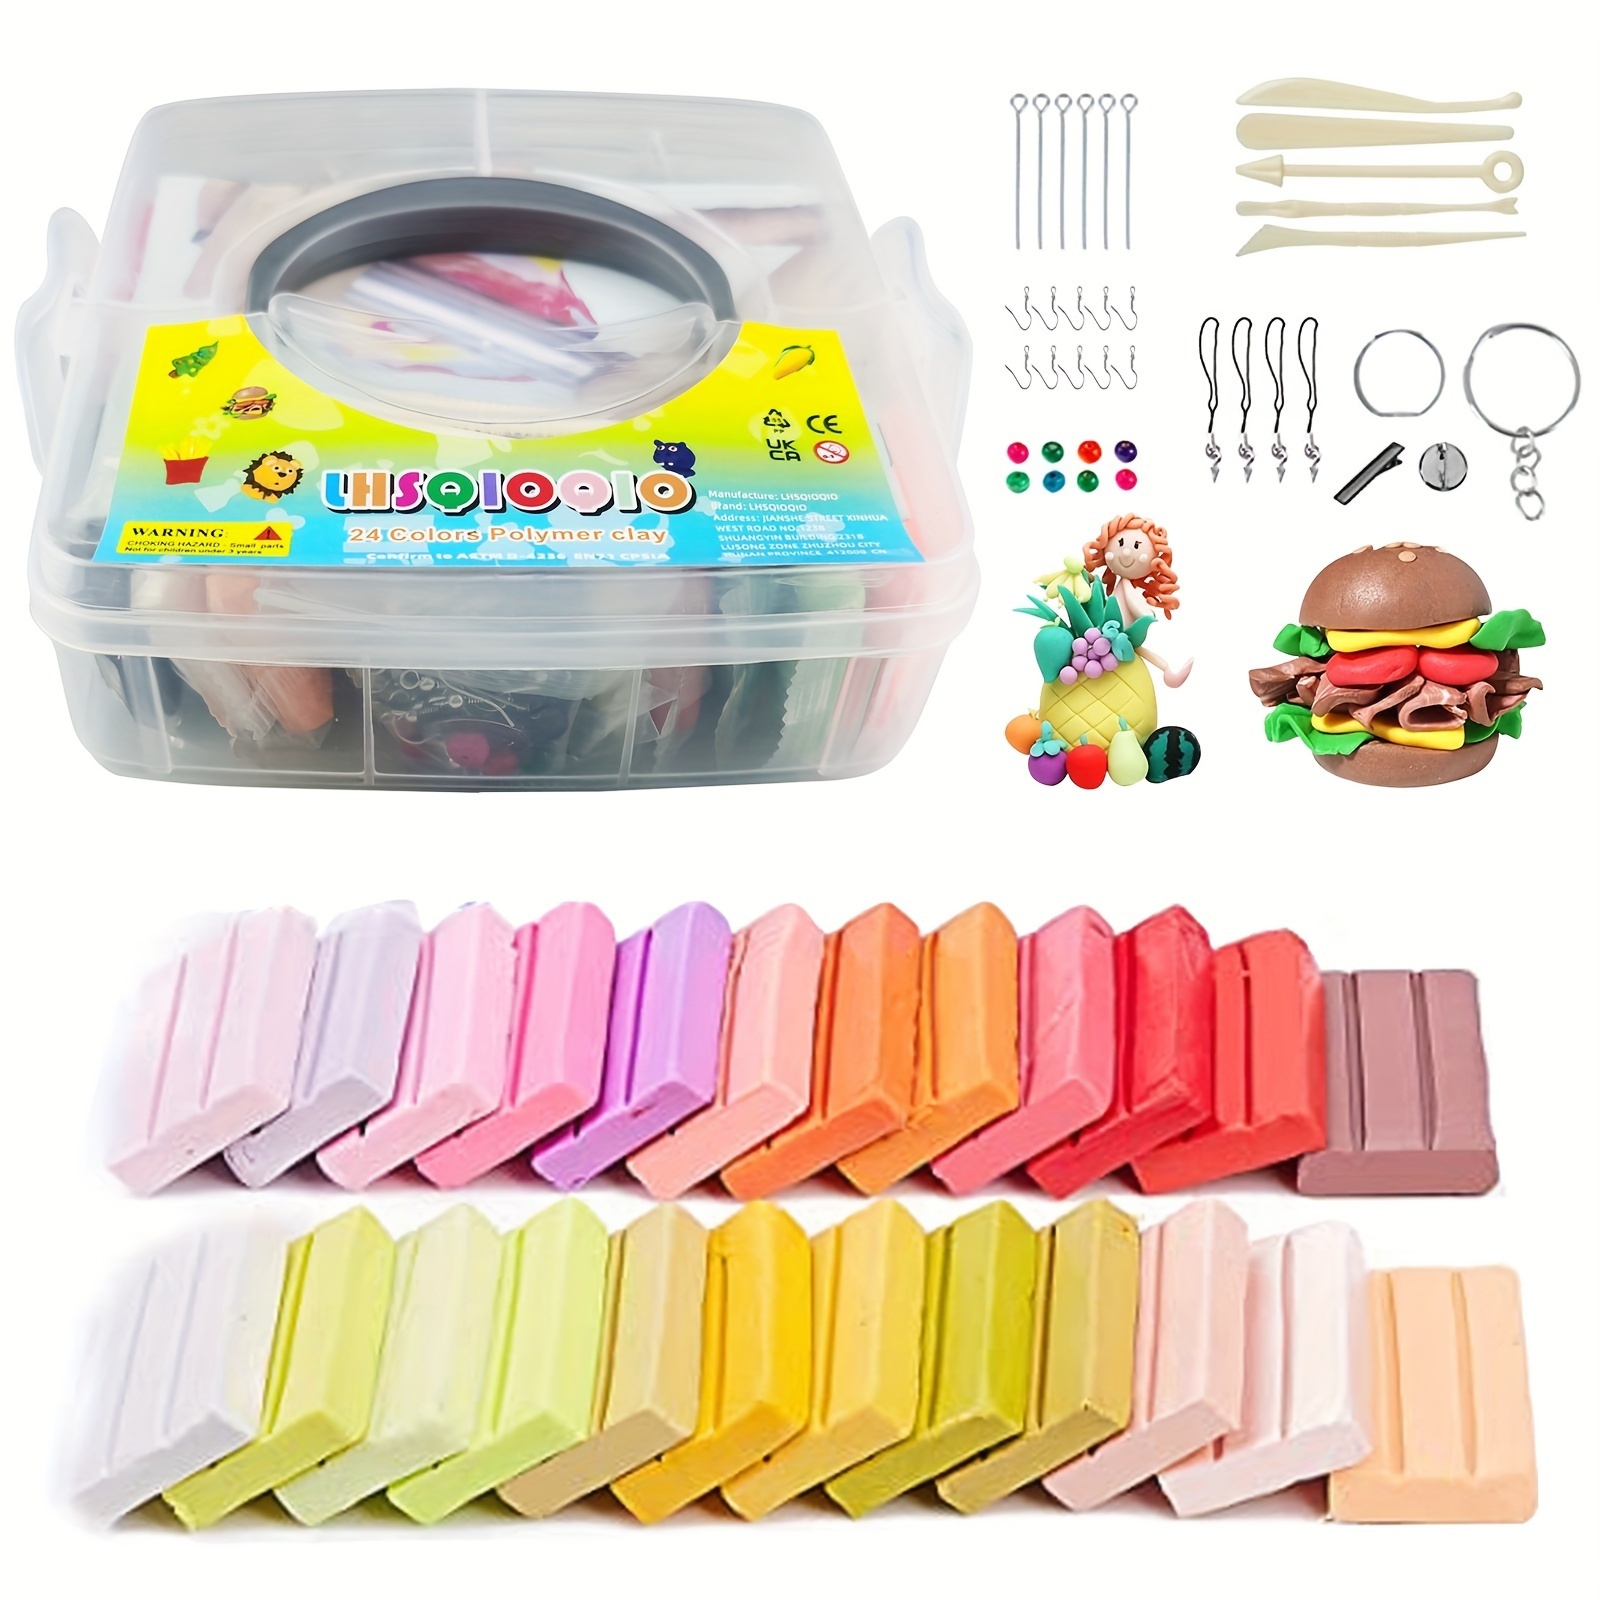 CiaraQ Kit de arcilla para modelar – 24 colores de arcilla ultraligera de  secado al aire, segura y no tóxica, gran regalo para niños.